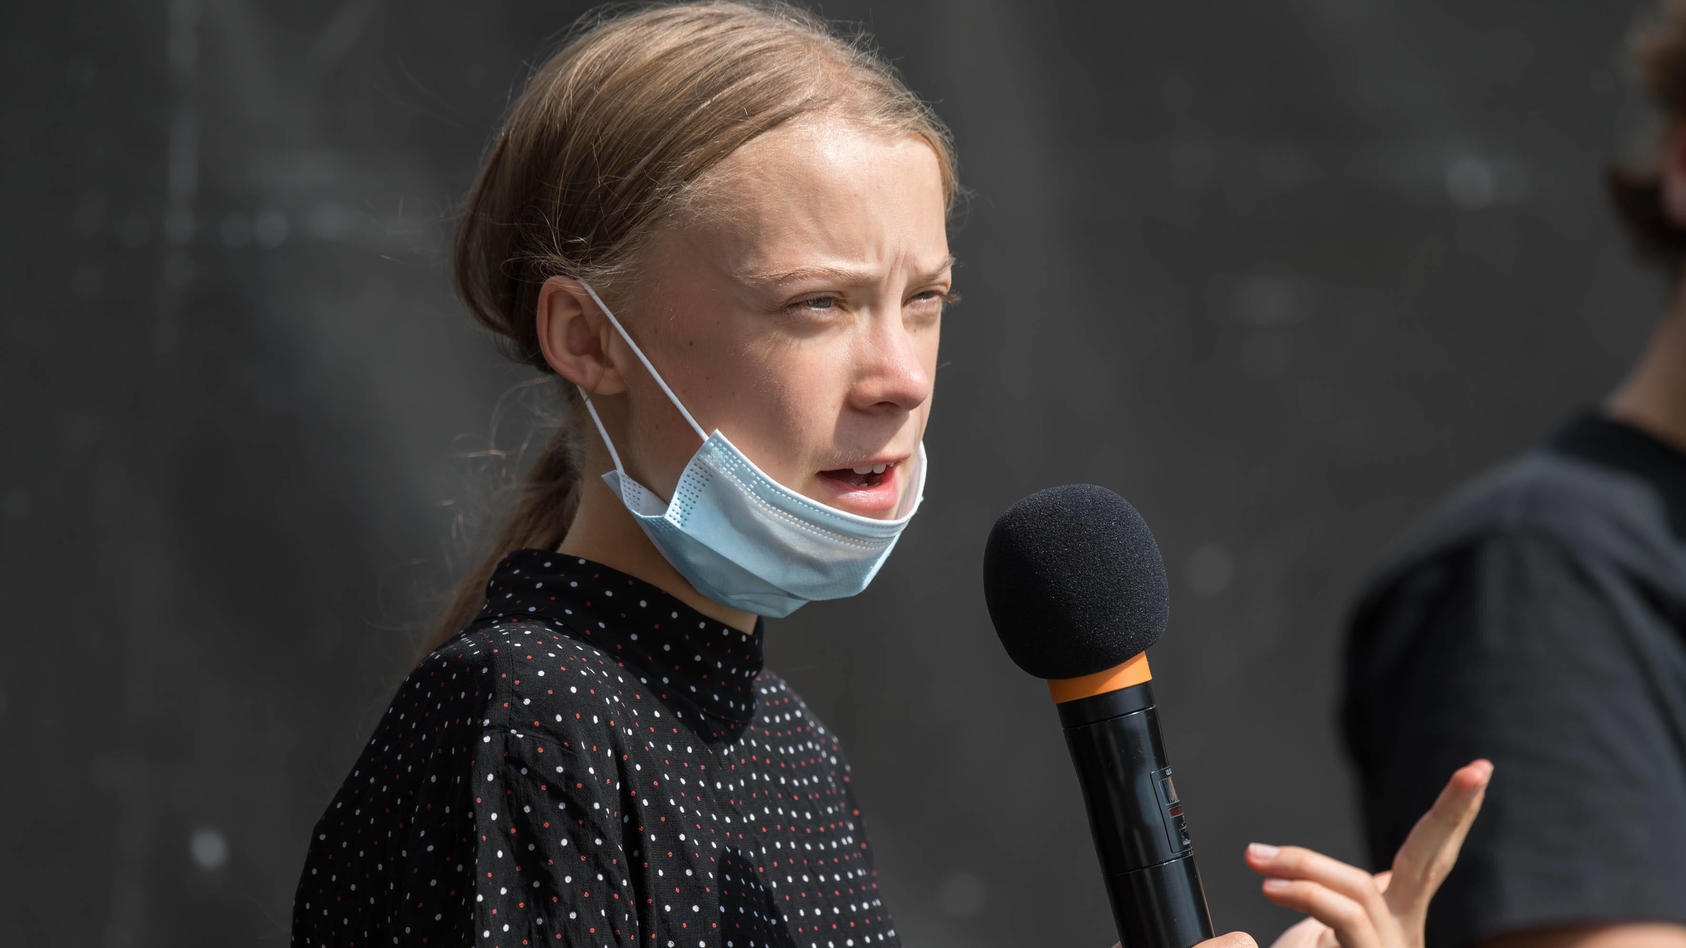 Umwelt Jahr Vorbei Klima Aktivistin Greta Thunberg Druckt Wieder Die Schulbank